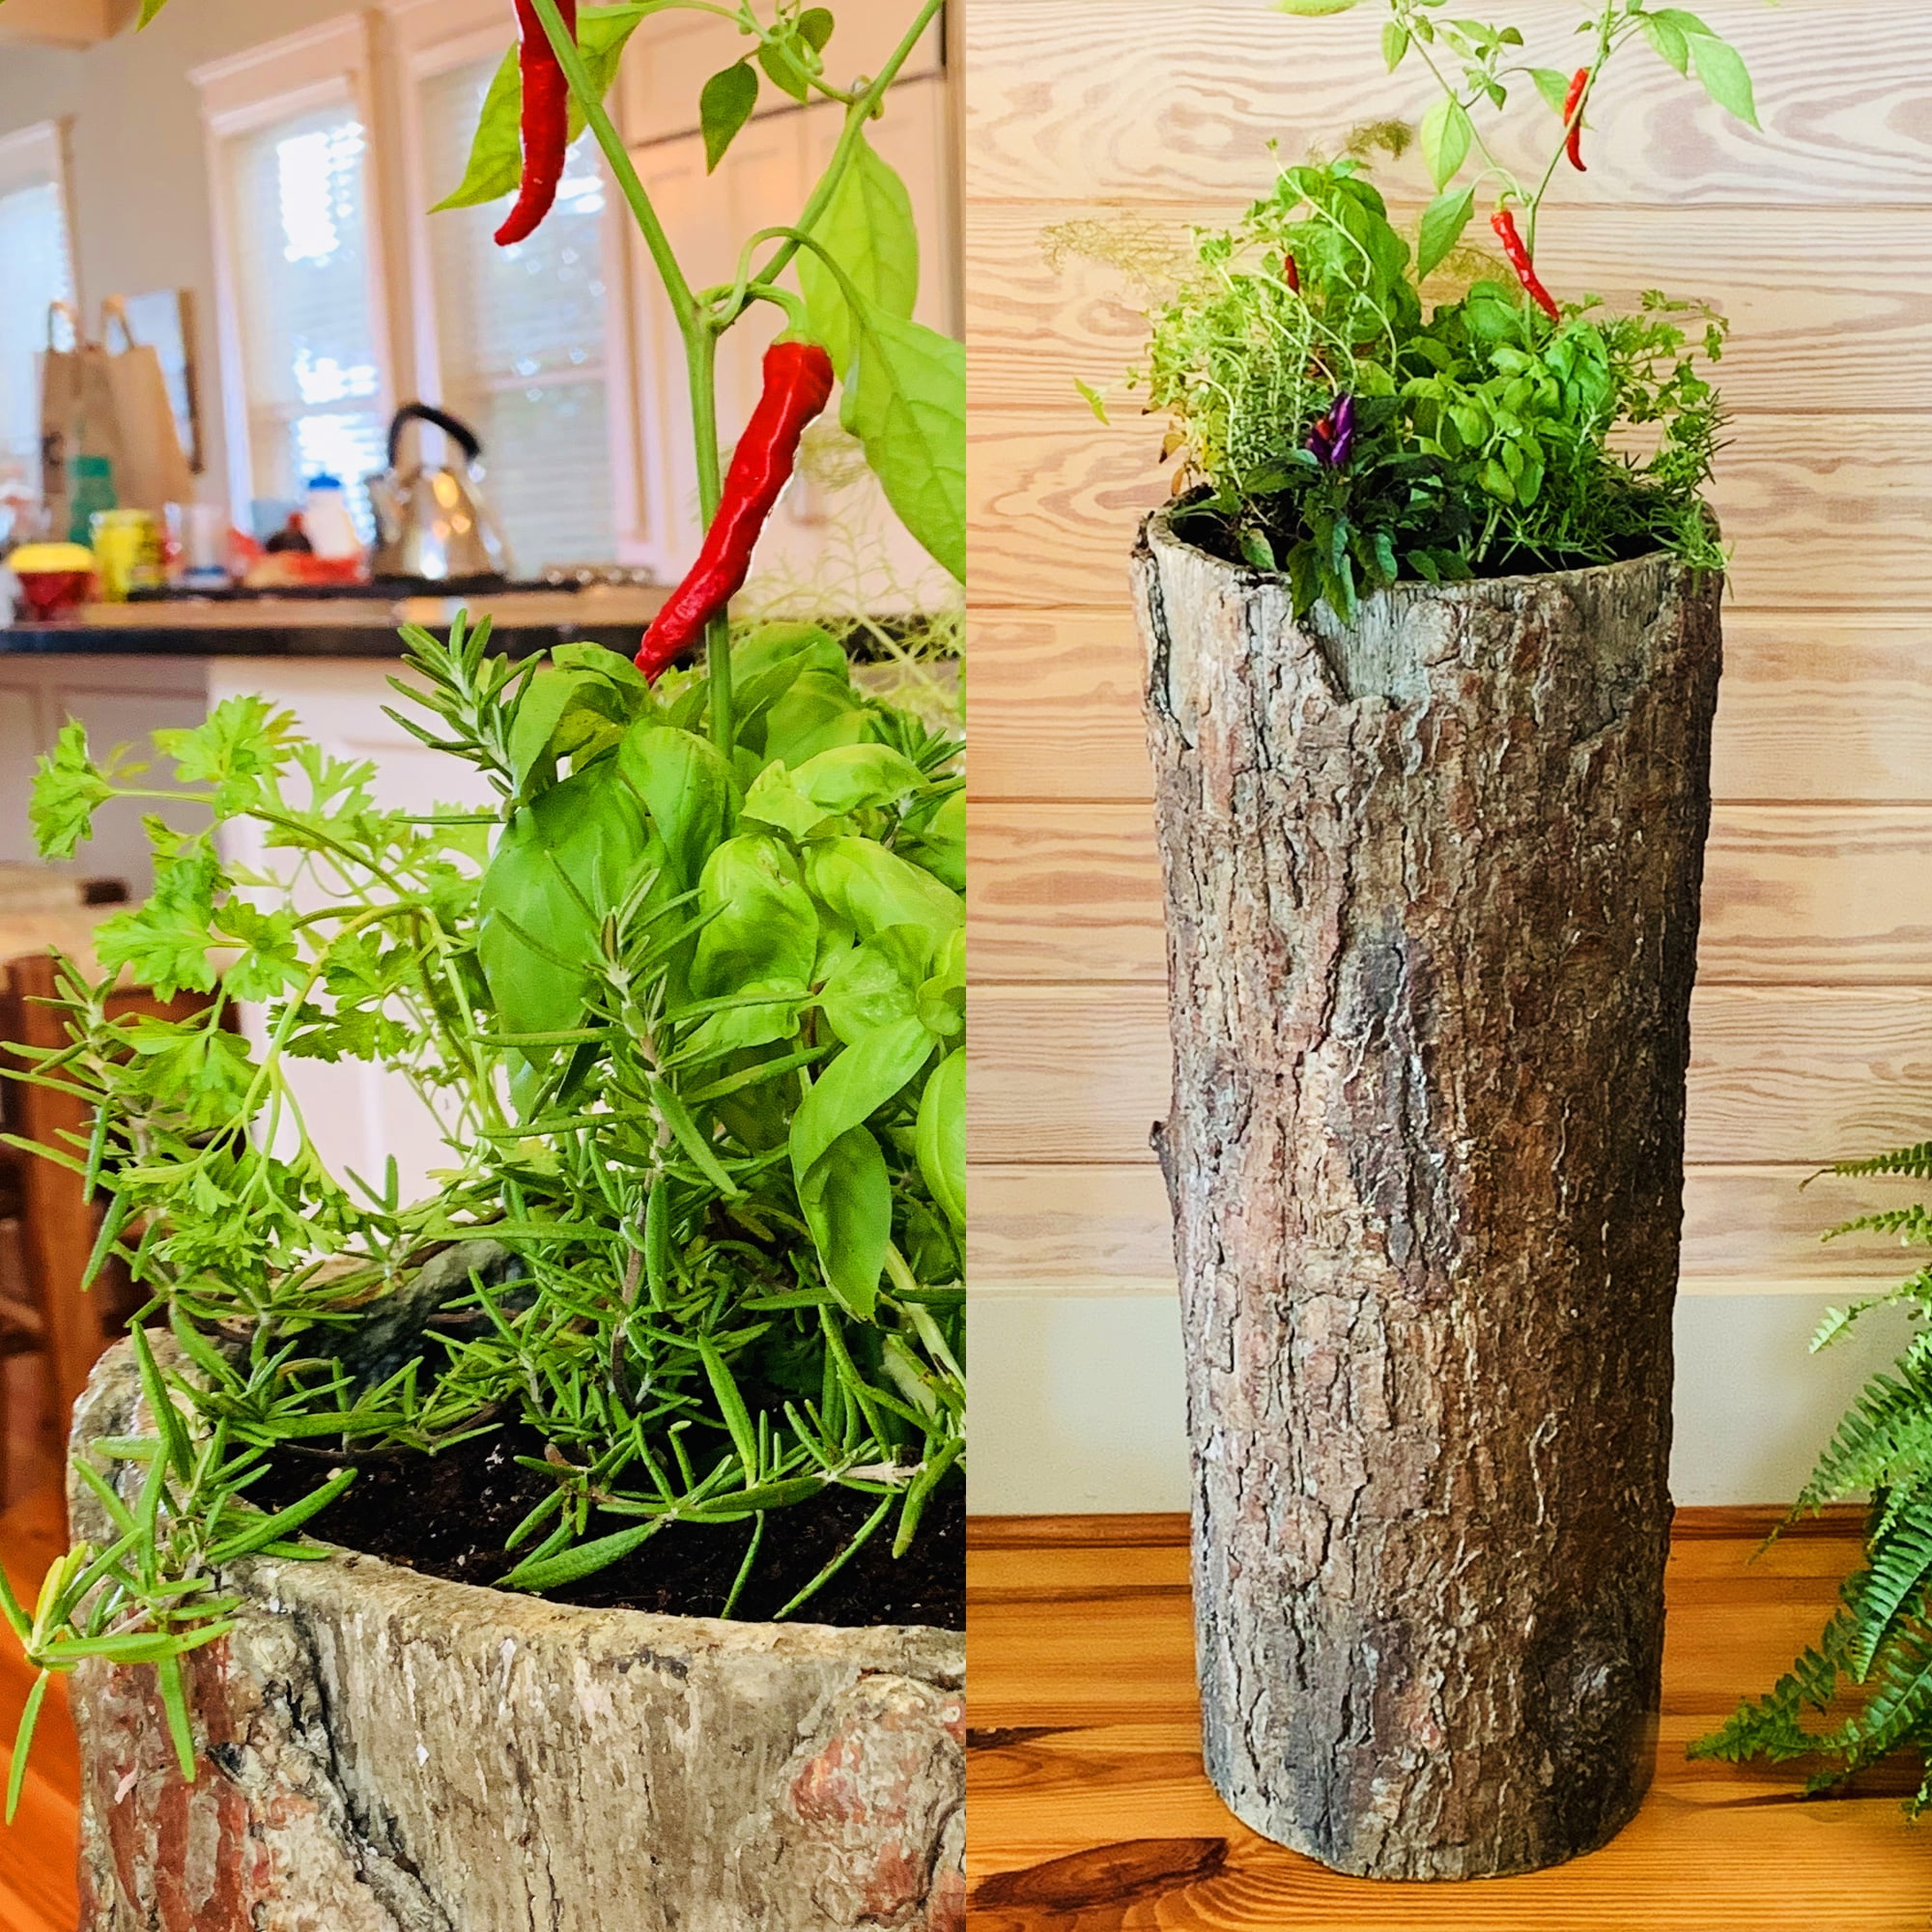 Elevated indoor planter Idea